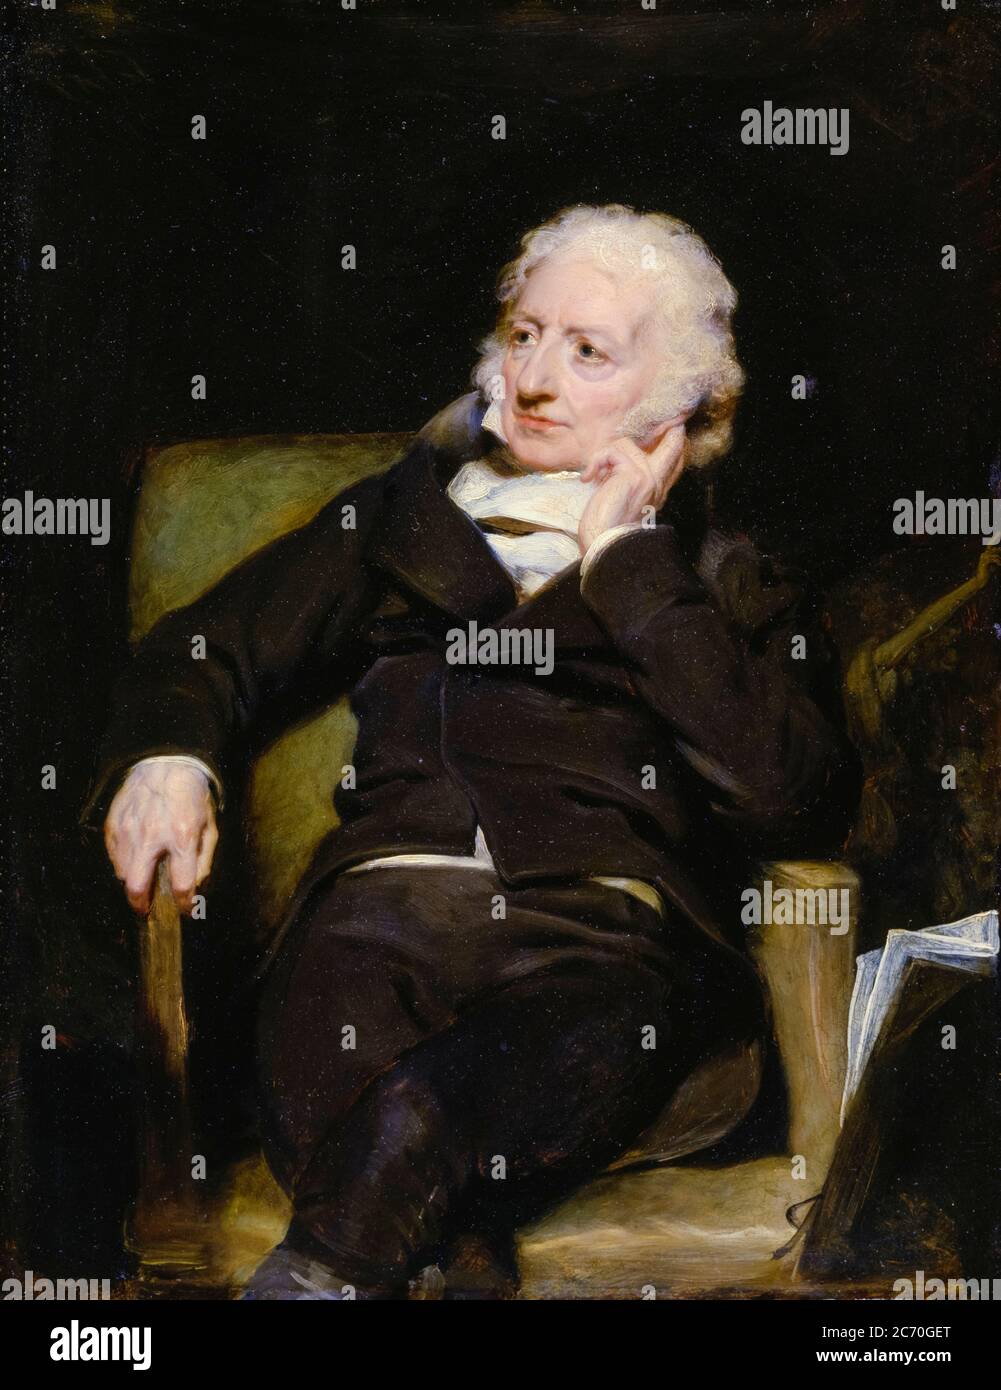 Henry Fuseli (Johann Heinrich Füssli) (1741-1825), peintre anglo-suisse, portrait de George Henry Harlow, 1817 Banque D'Images